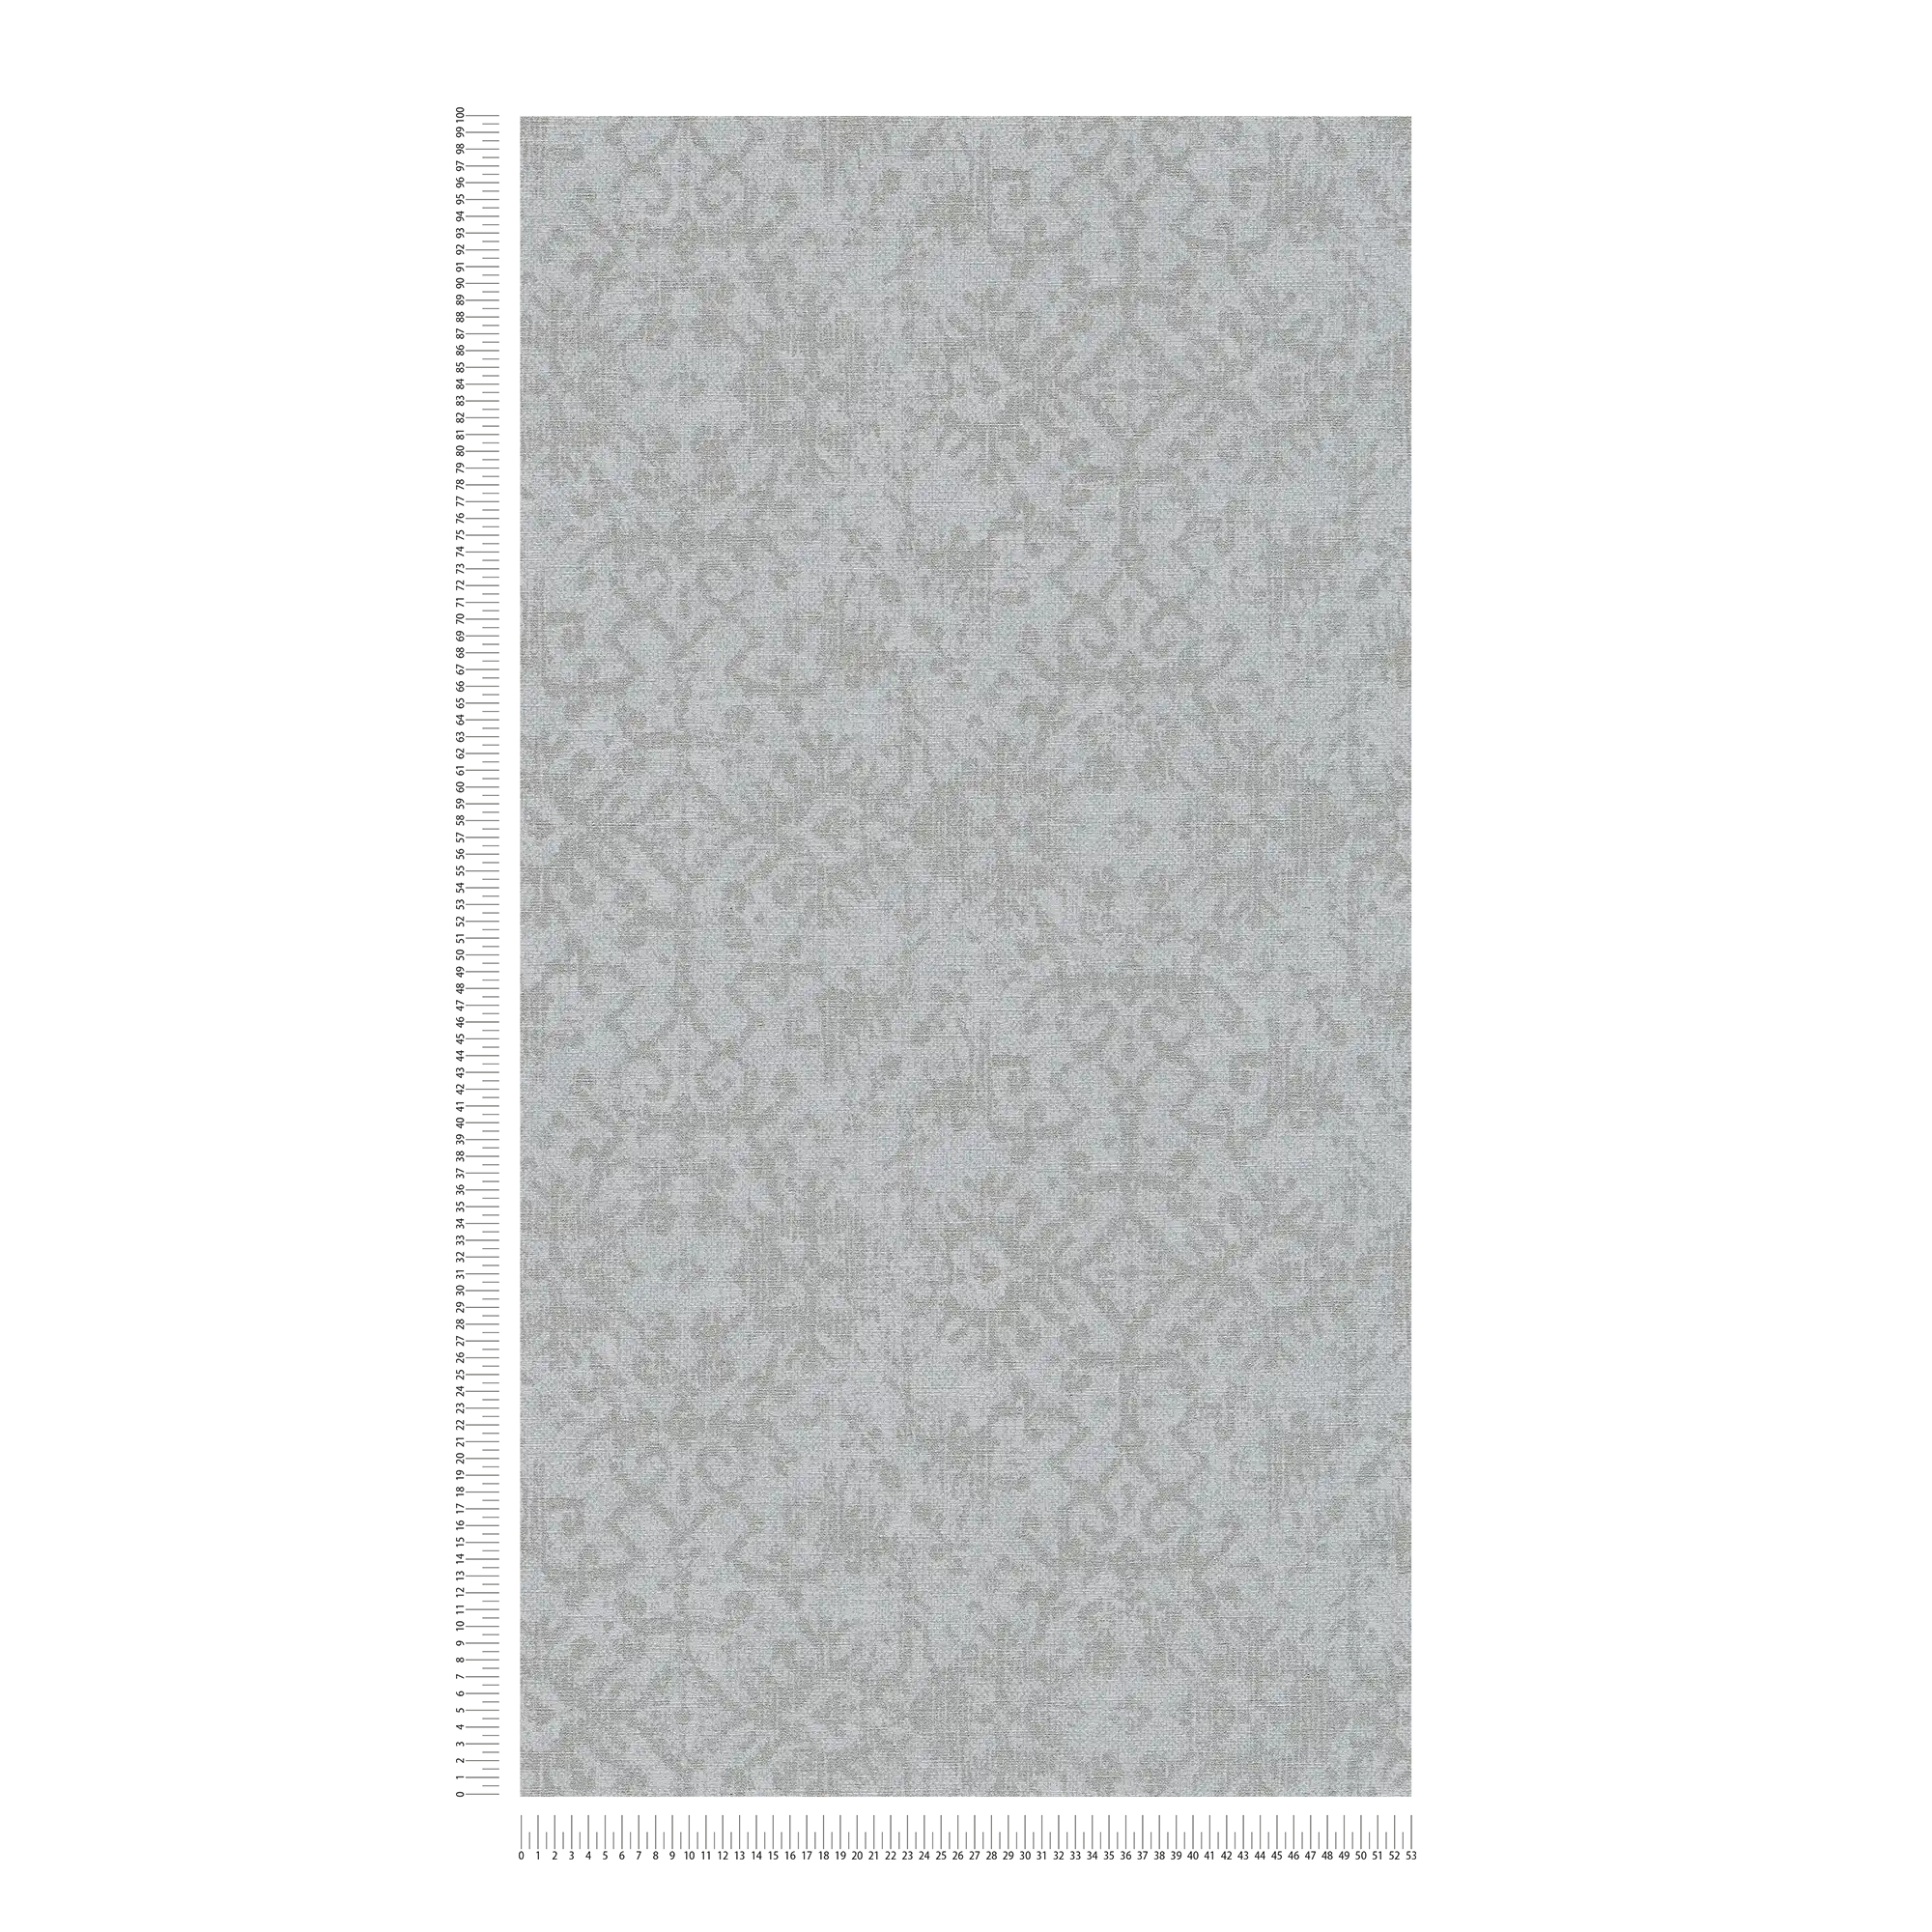             carta da parati in ottica tessile con motivi ornamentali etnici - grigio
        